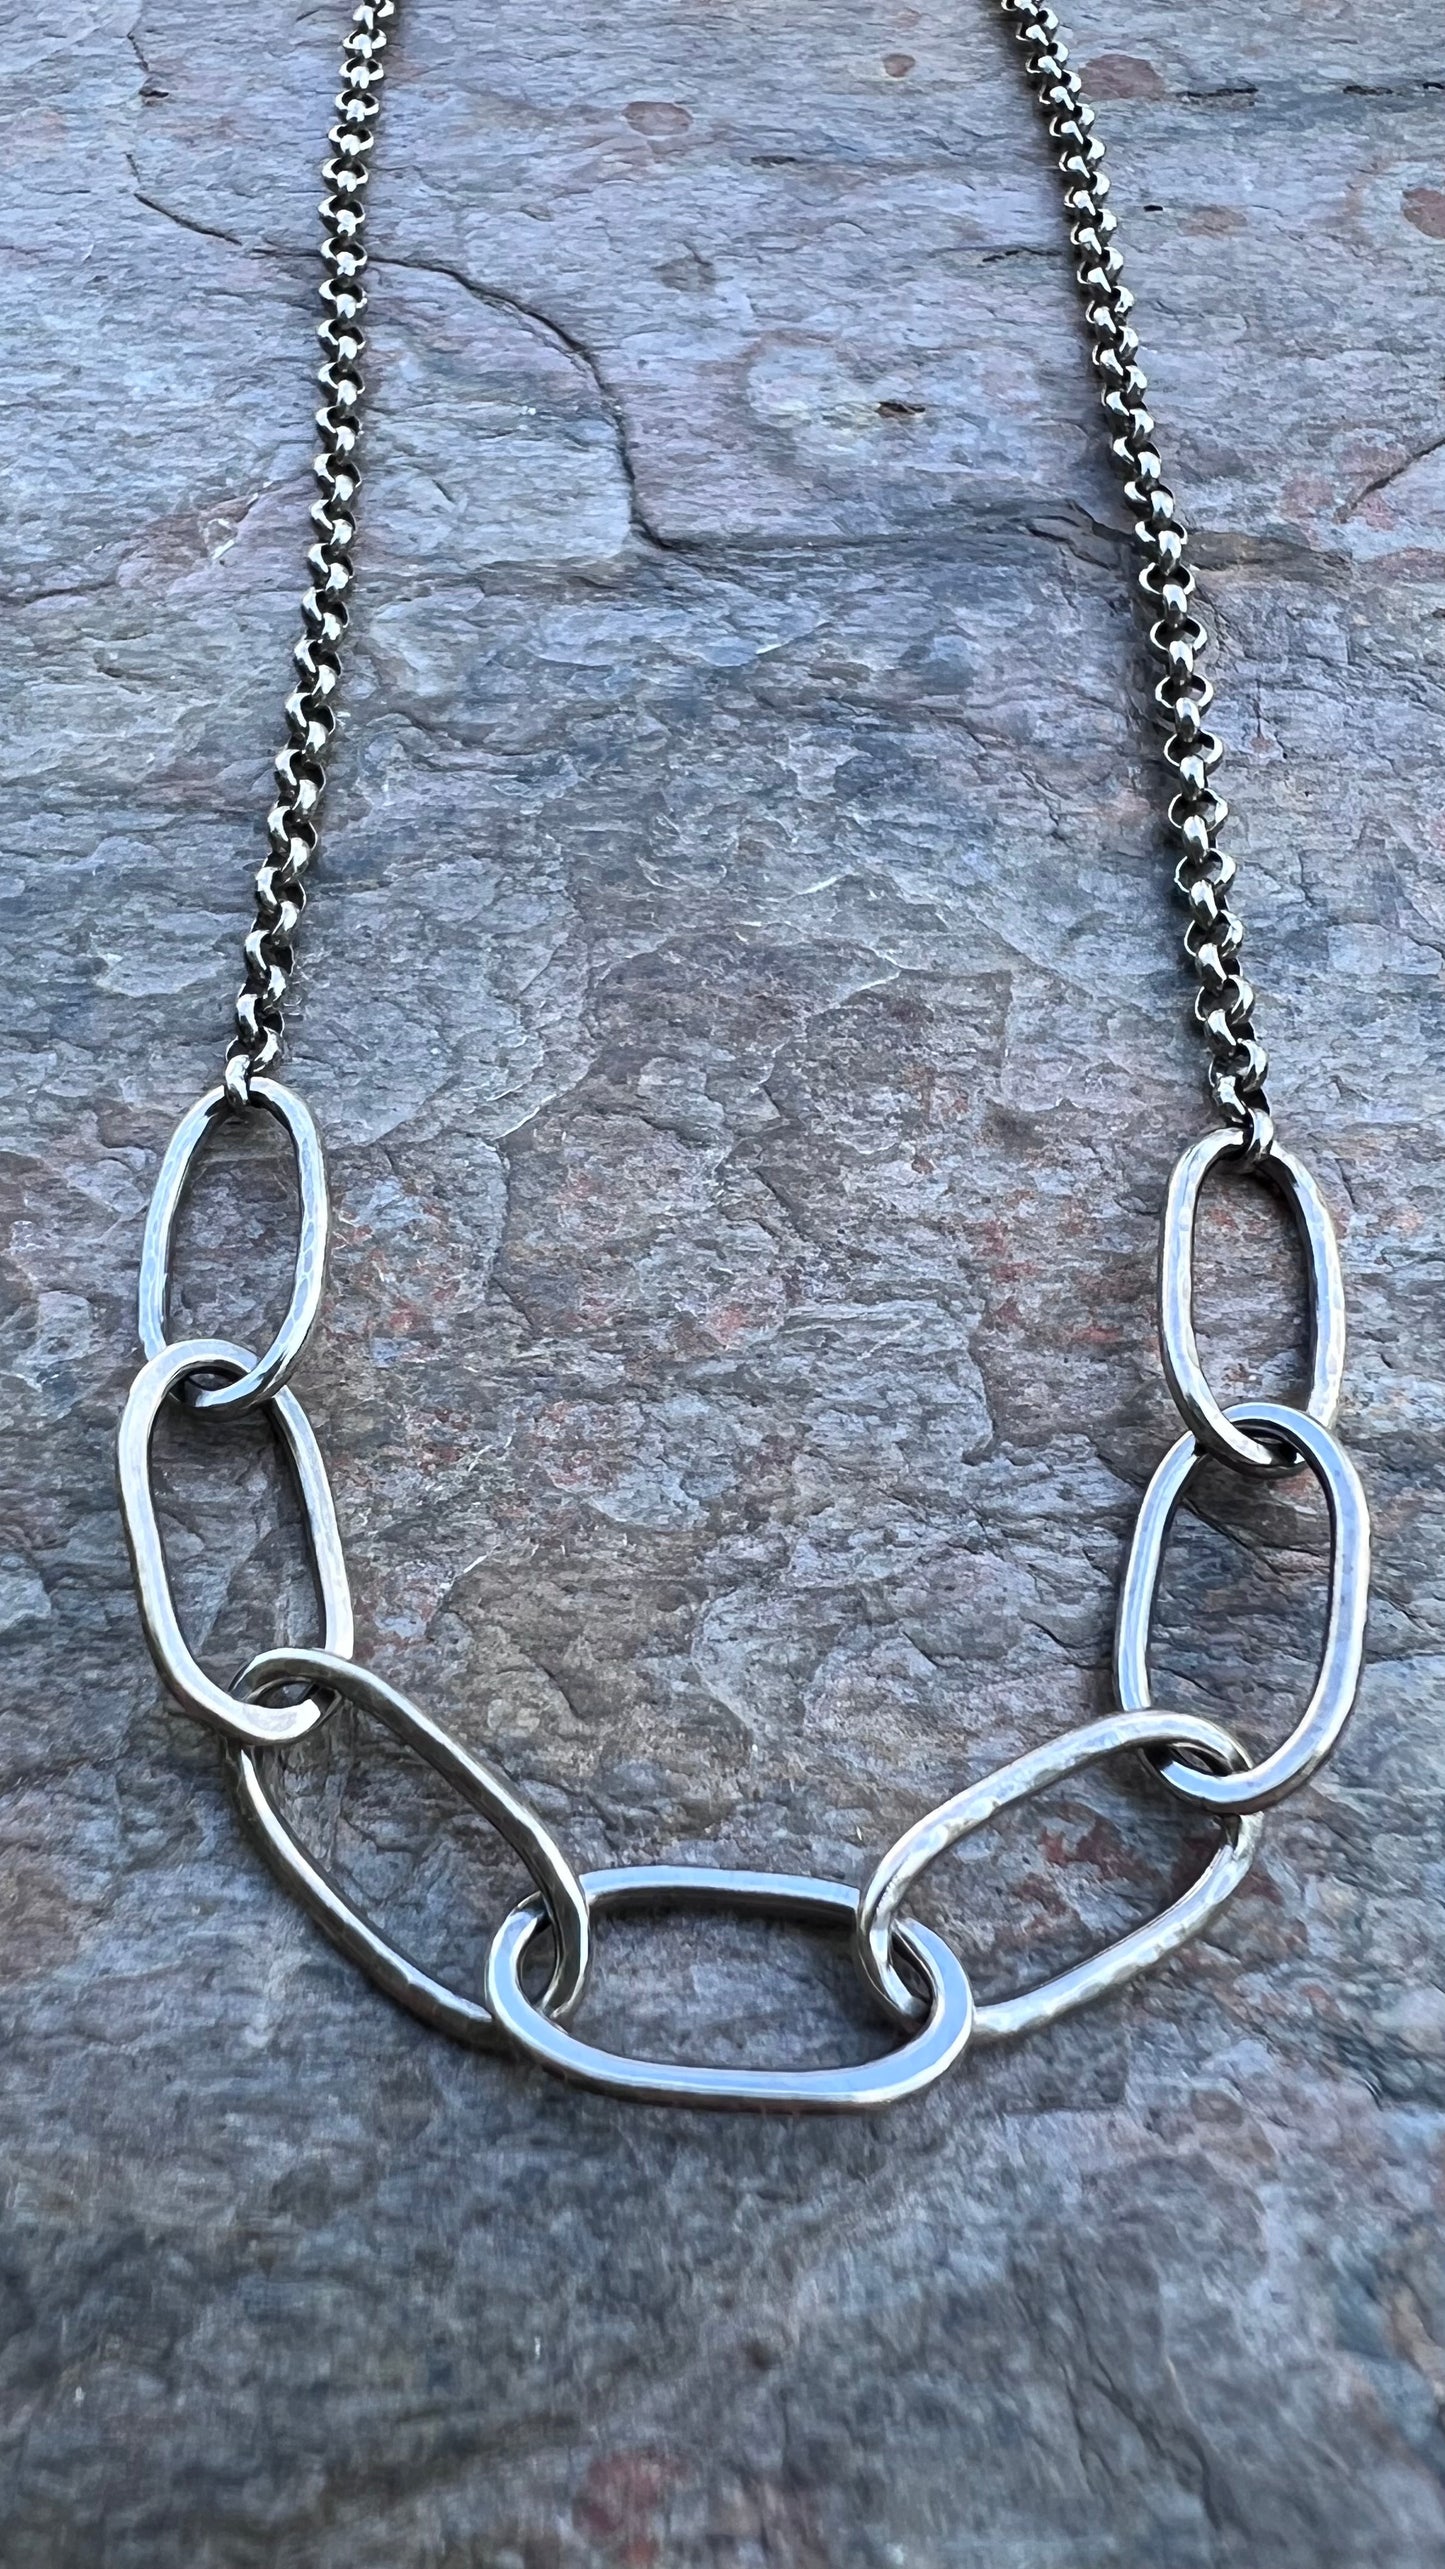 Sterling Silver Hammered Link Necklace - Handmade Sterling Silver Links on Sterling Silver Rolo Chain